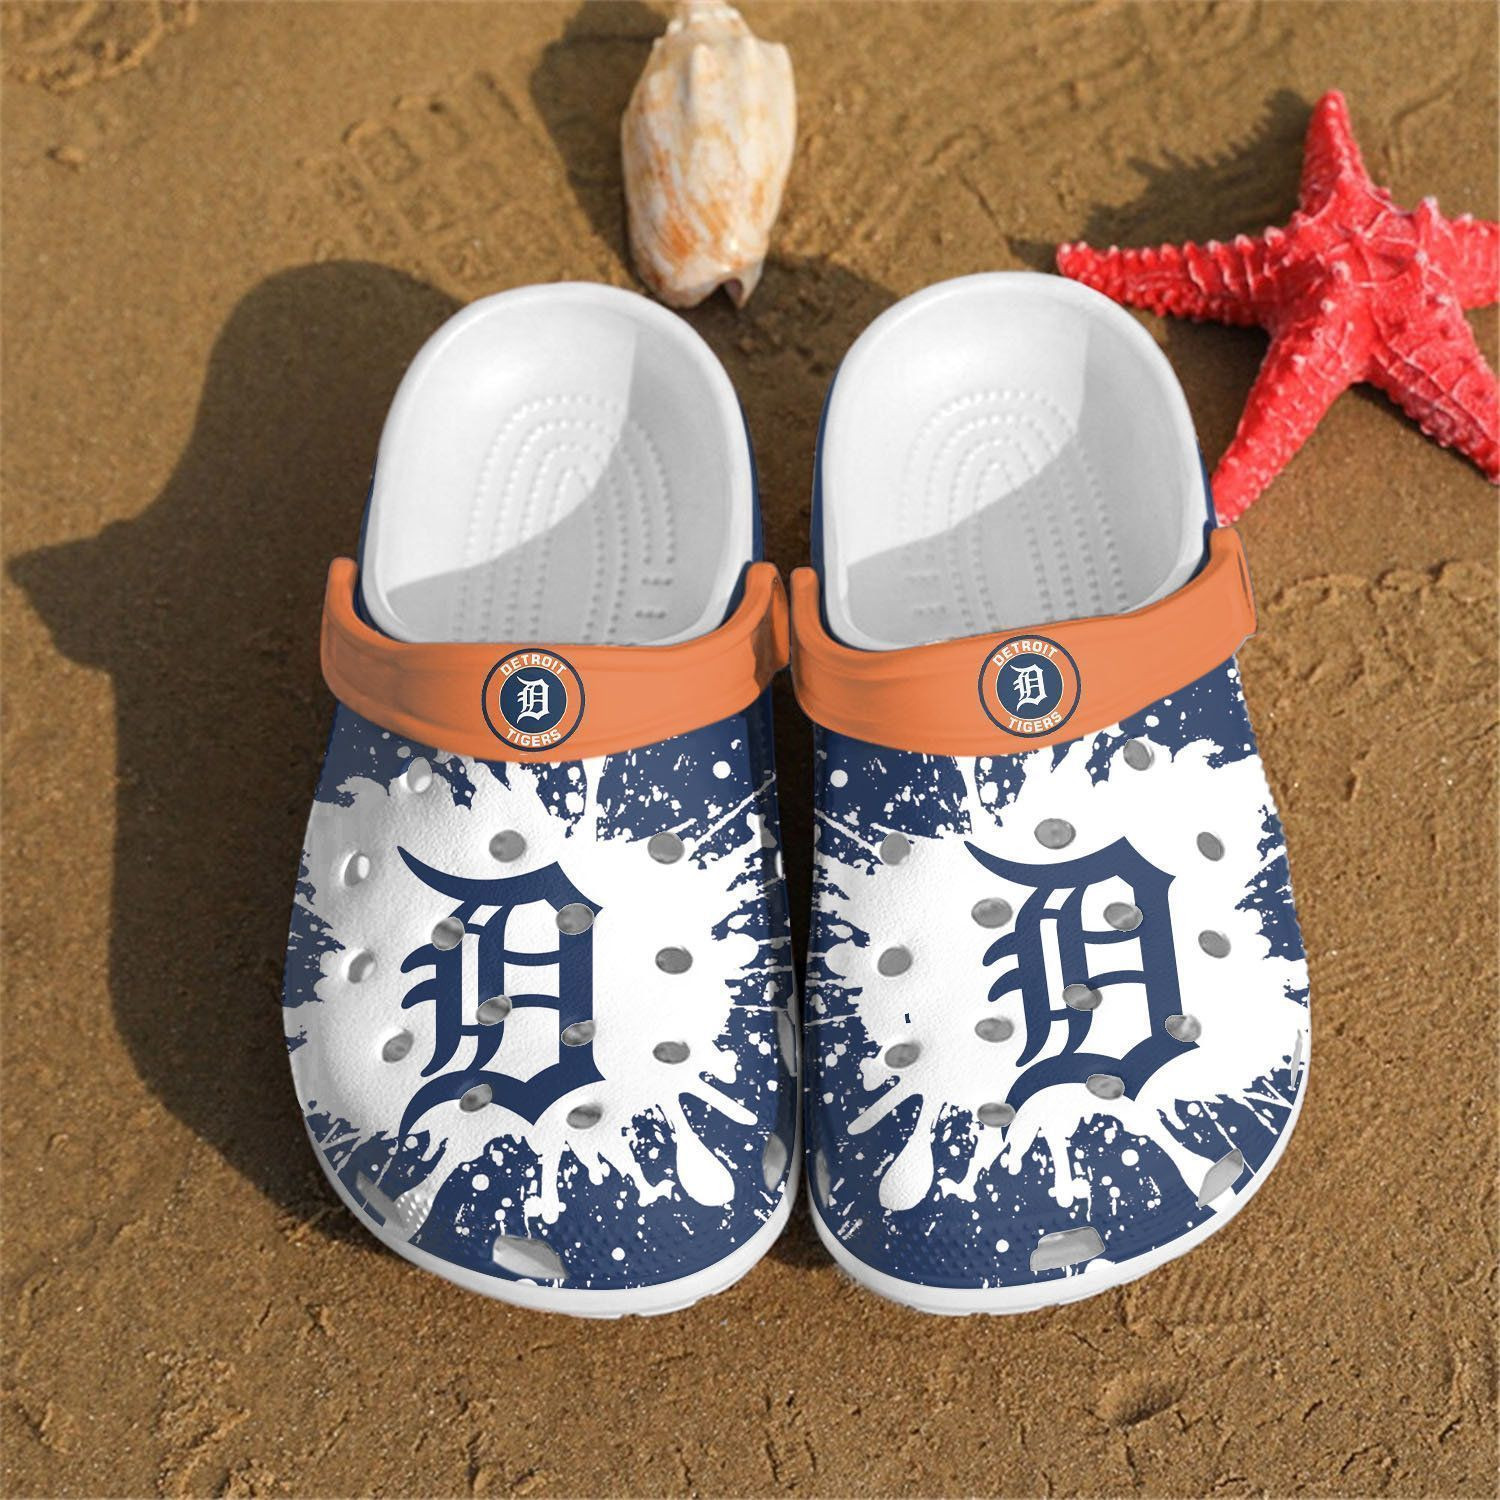 Detroit Tigers Mlb Teams Gift For Fan Crocs Clog Shoescrocband Clogs Comfy Foot